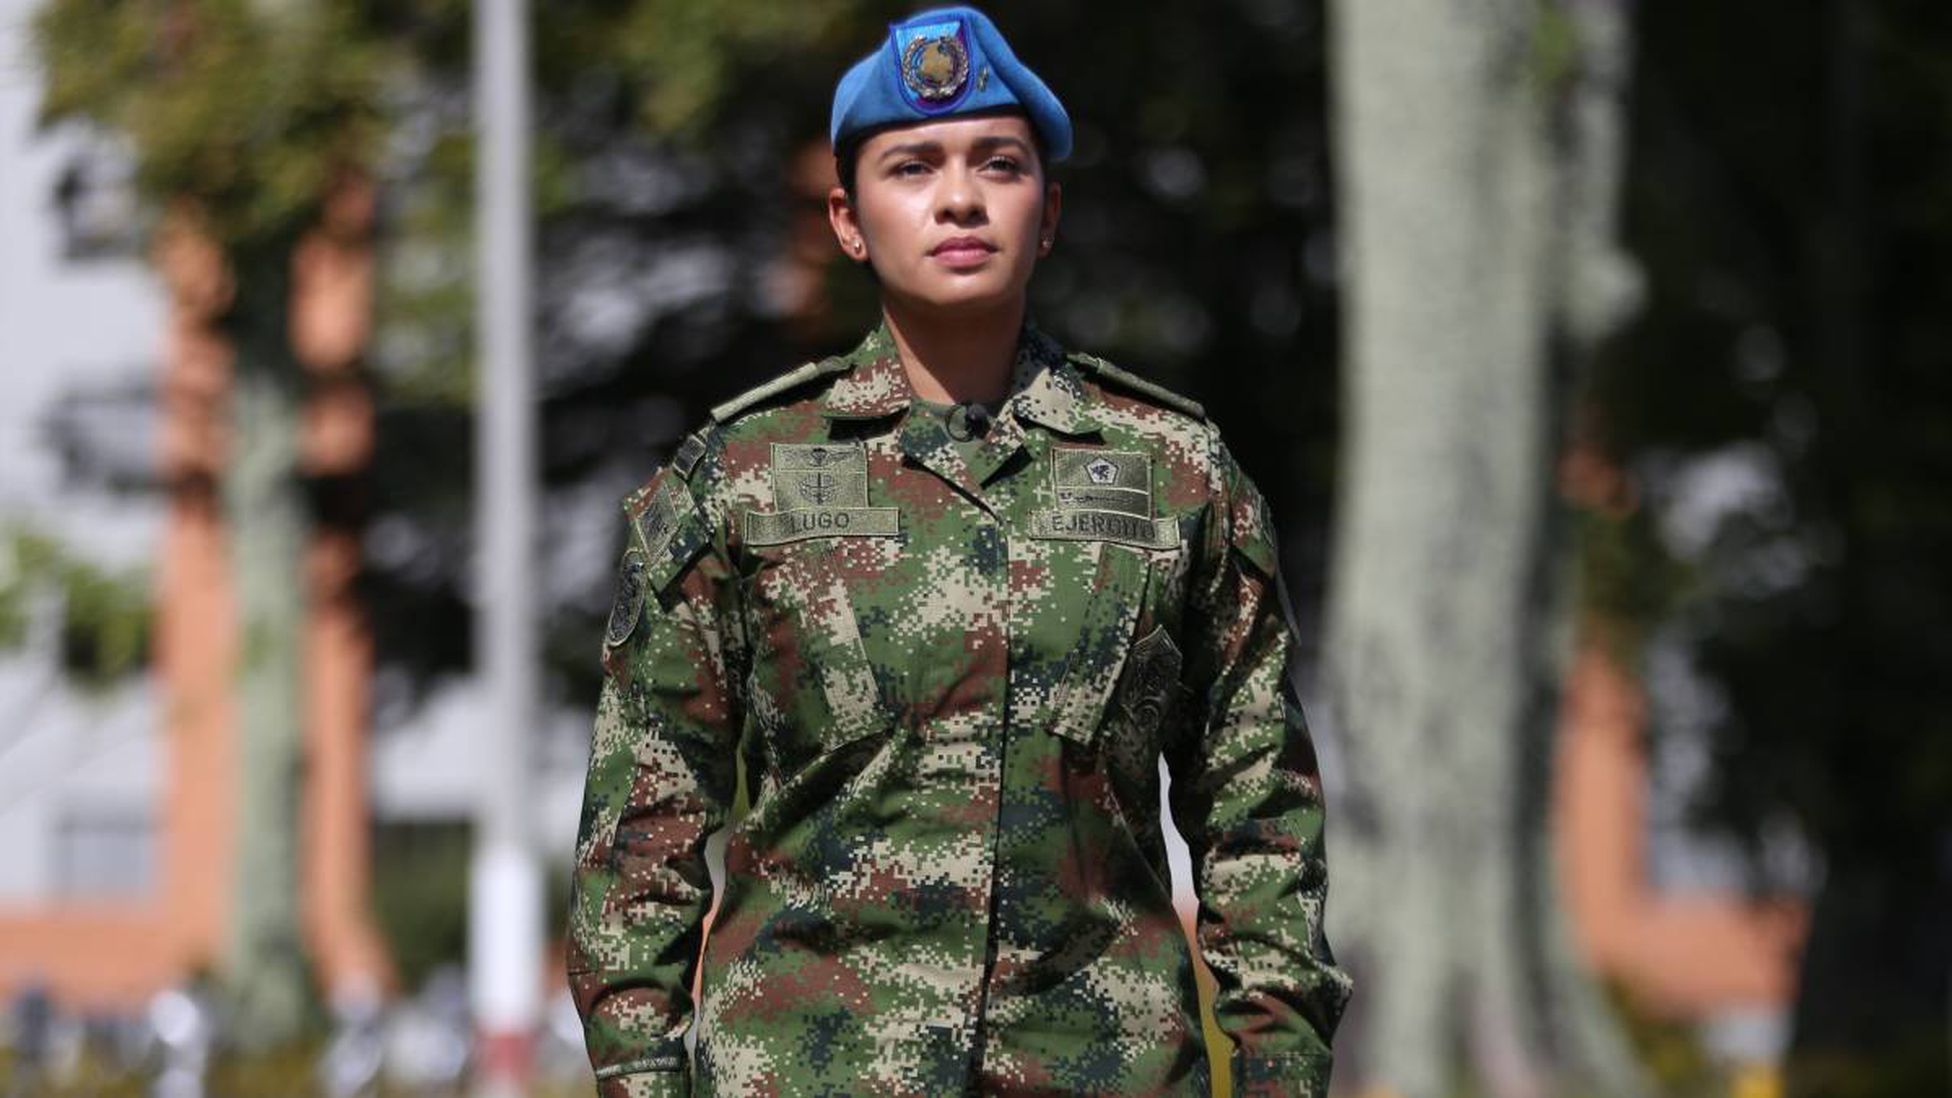 Servicio militar para mujeres aprobado/AS Colombia